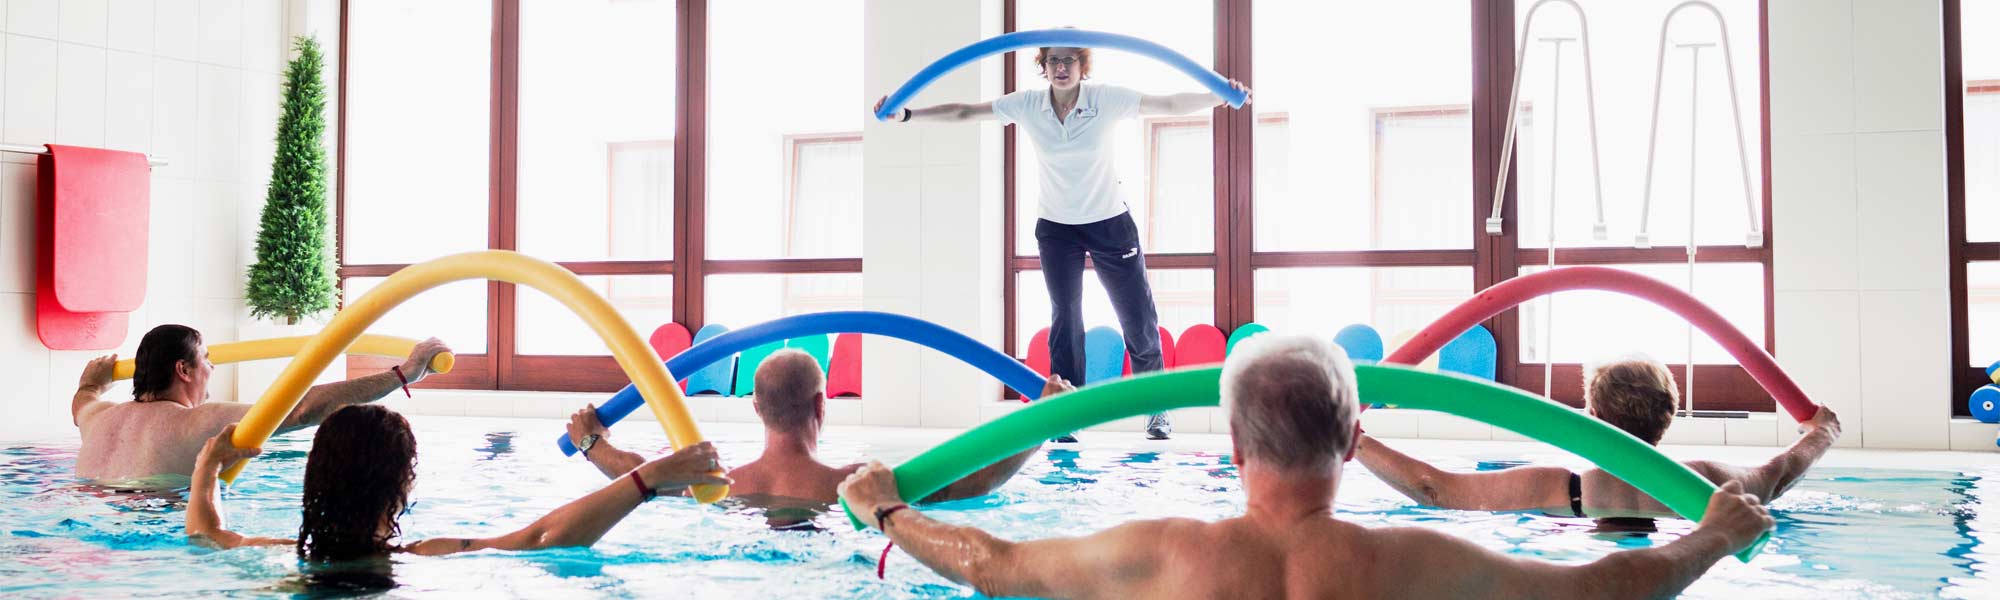 Sporttherapie im Bewegungsbad mit Poolnudeln